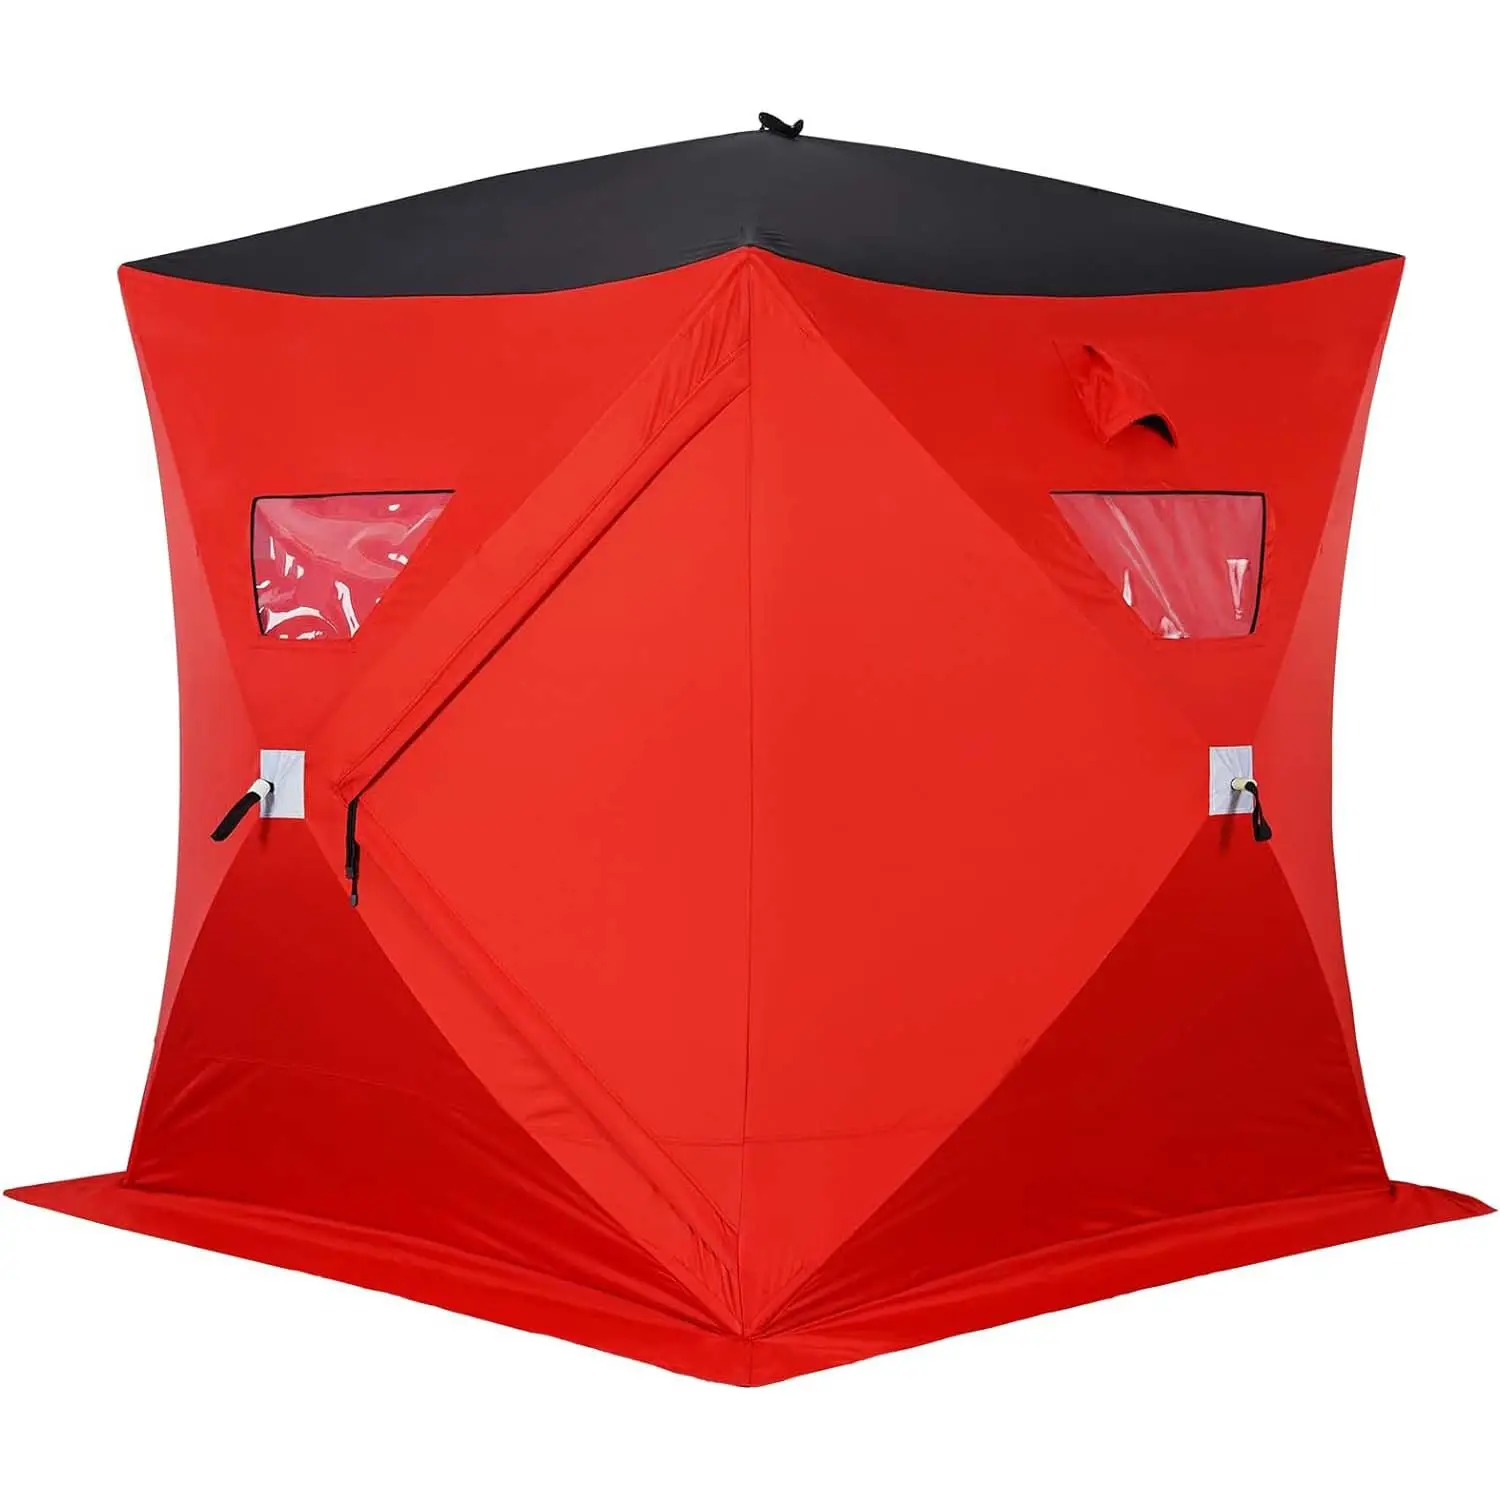 Tenda da campeggio per la pesca all'aperto con ghiaccio portatile per la vendita a caldo rifugio idrorepellente e resistente al vento